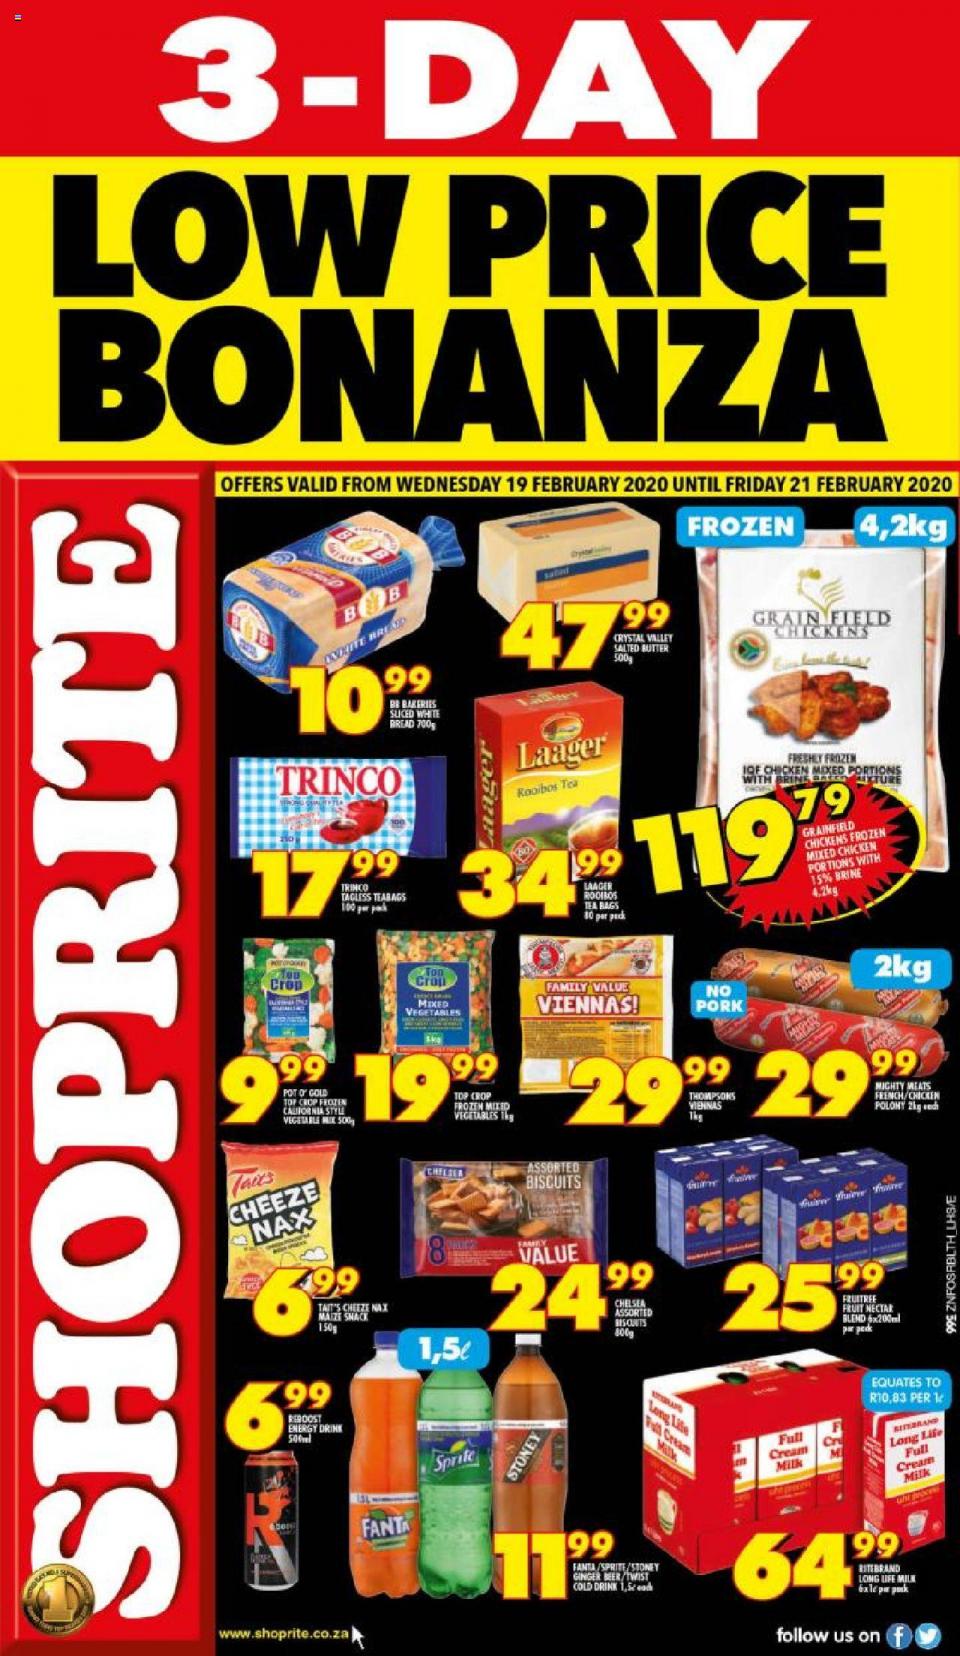 Shoprite Specials Low Price Bonanza 19 February 2020